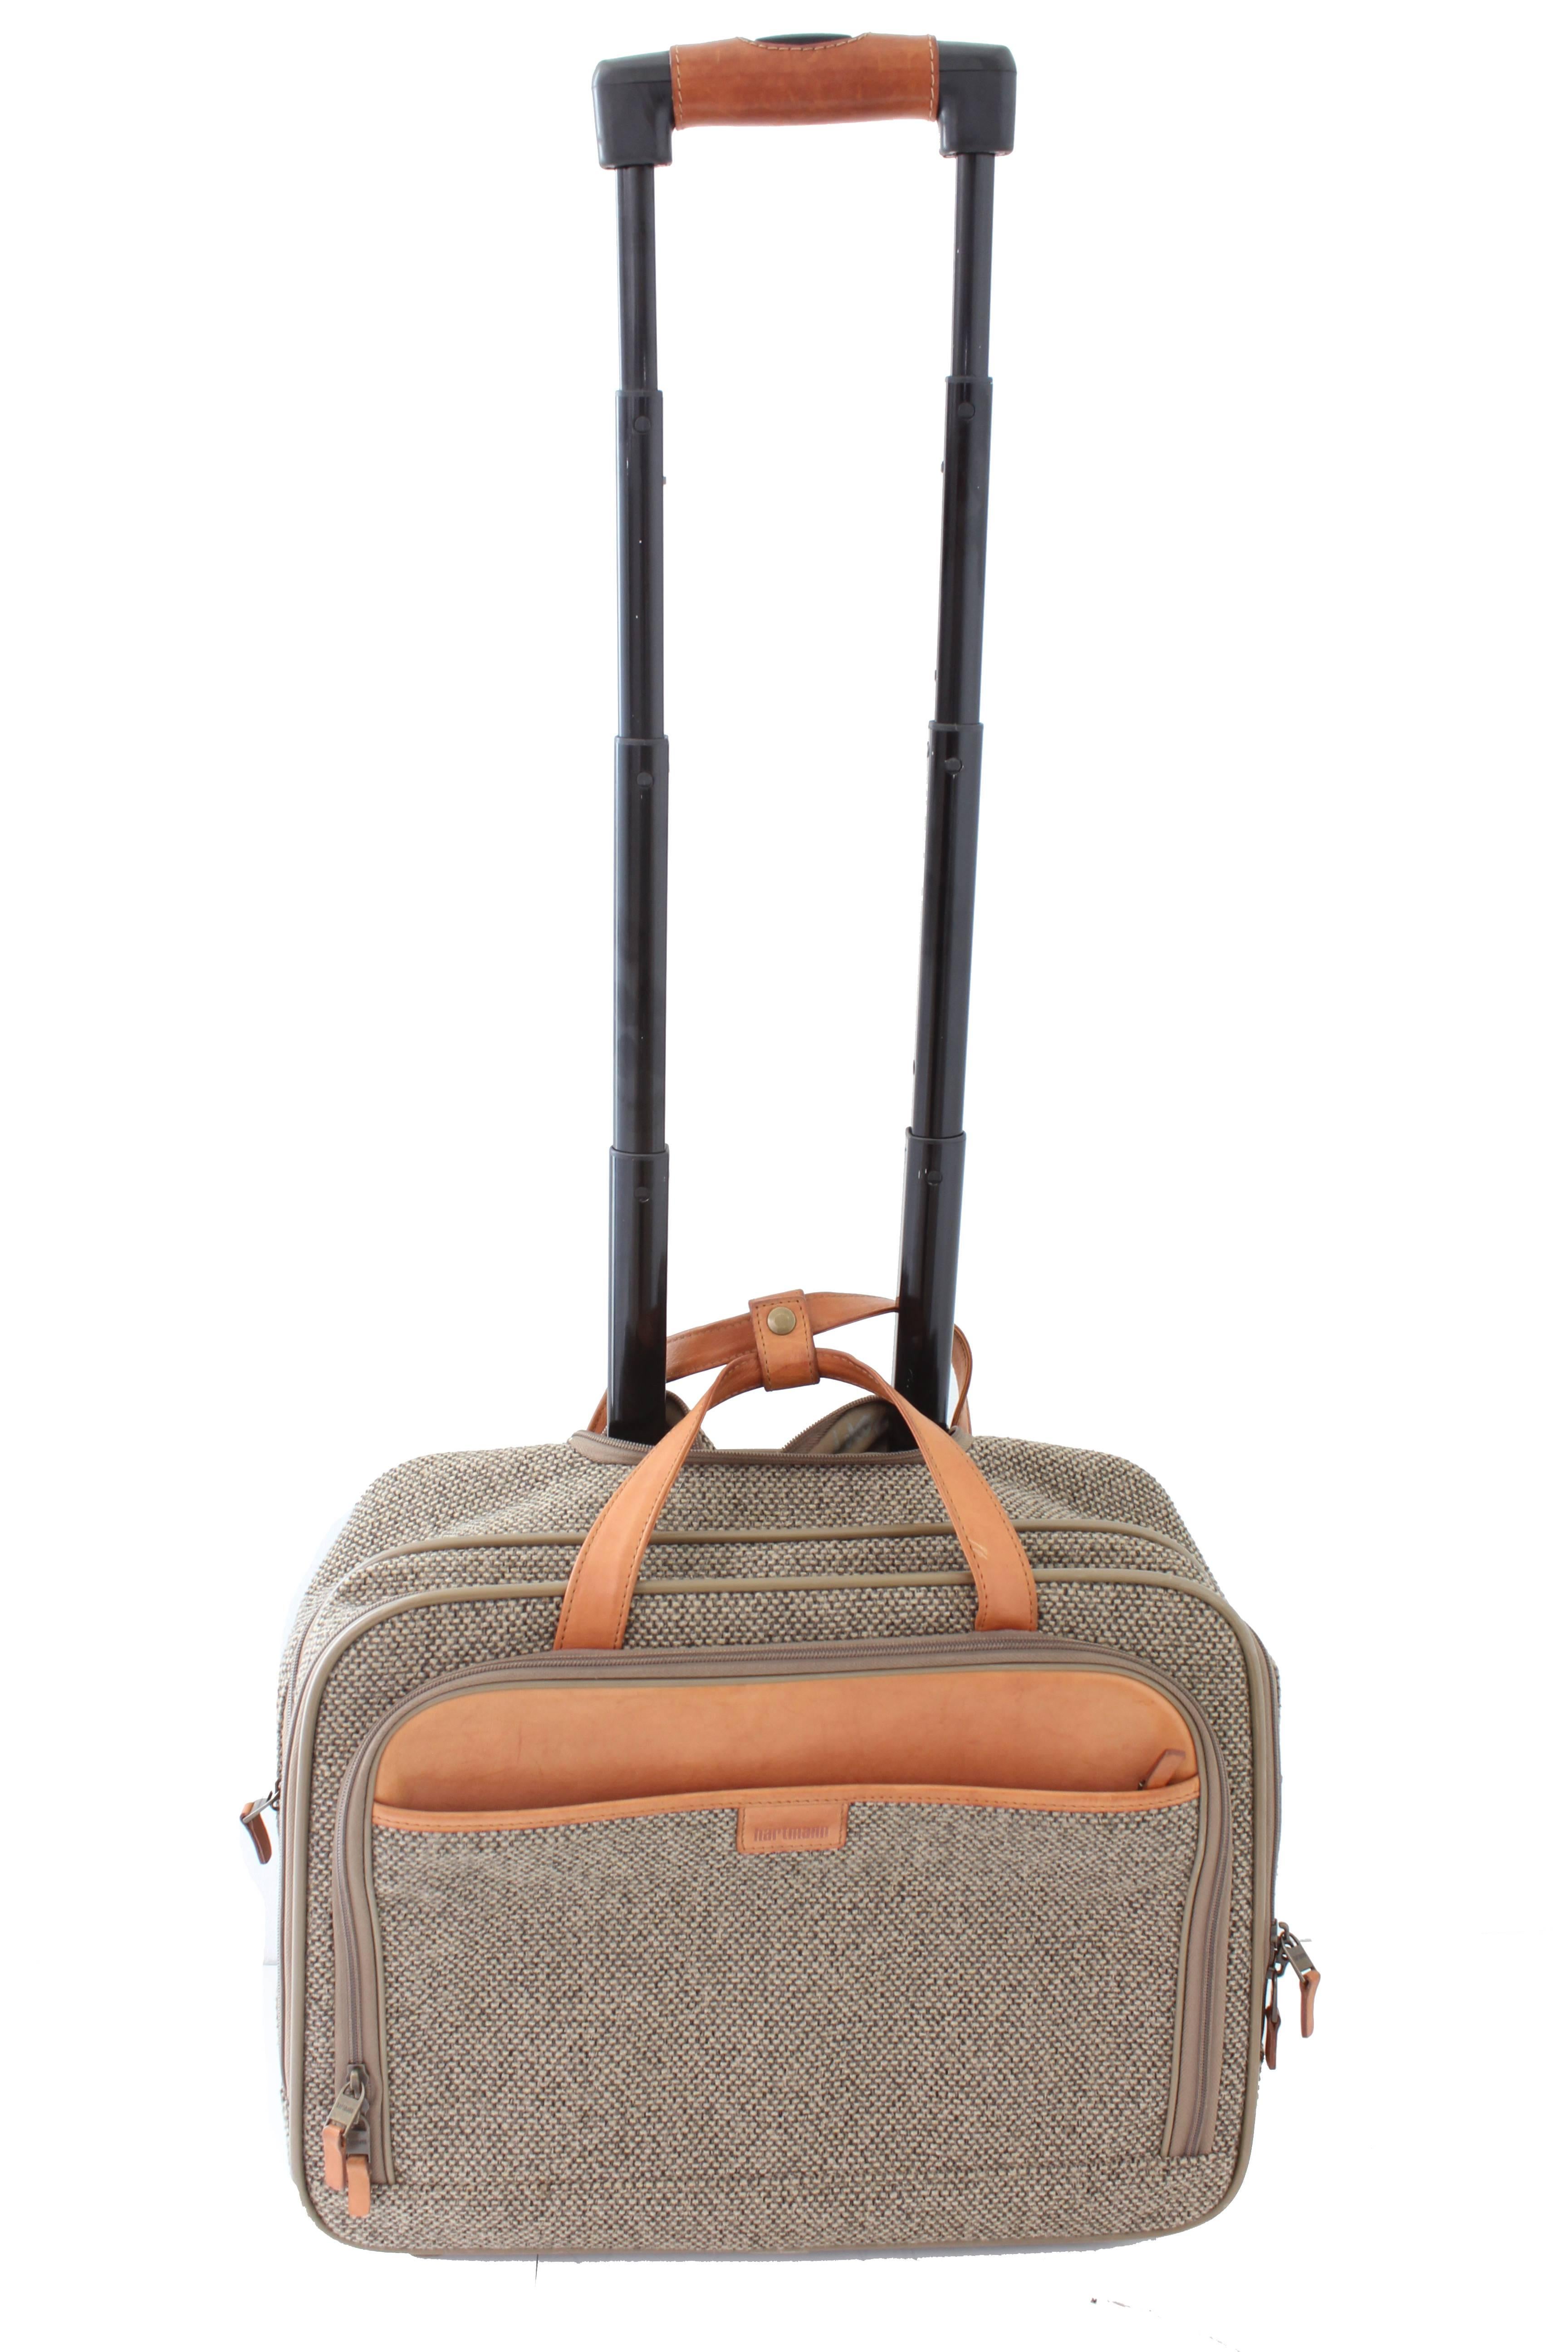 vintage hartmann tweed luggage